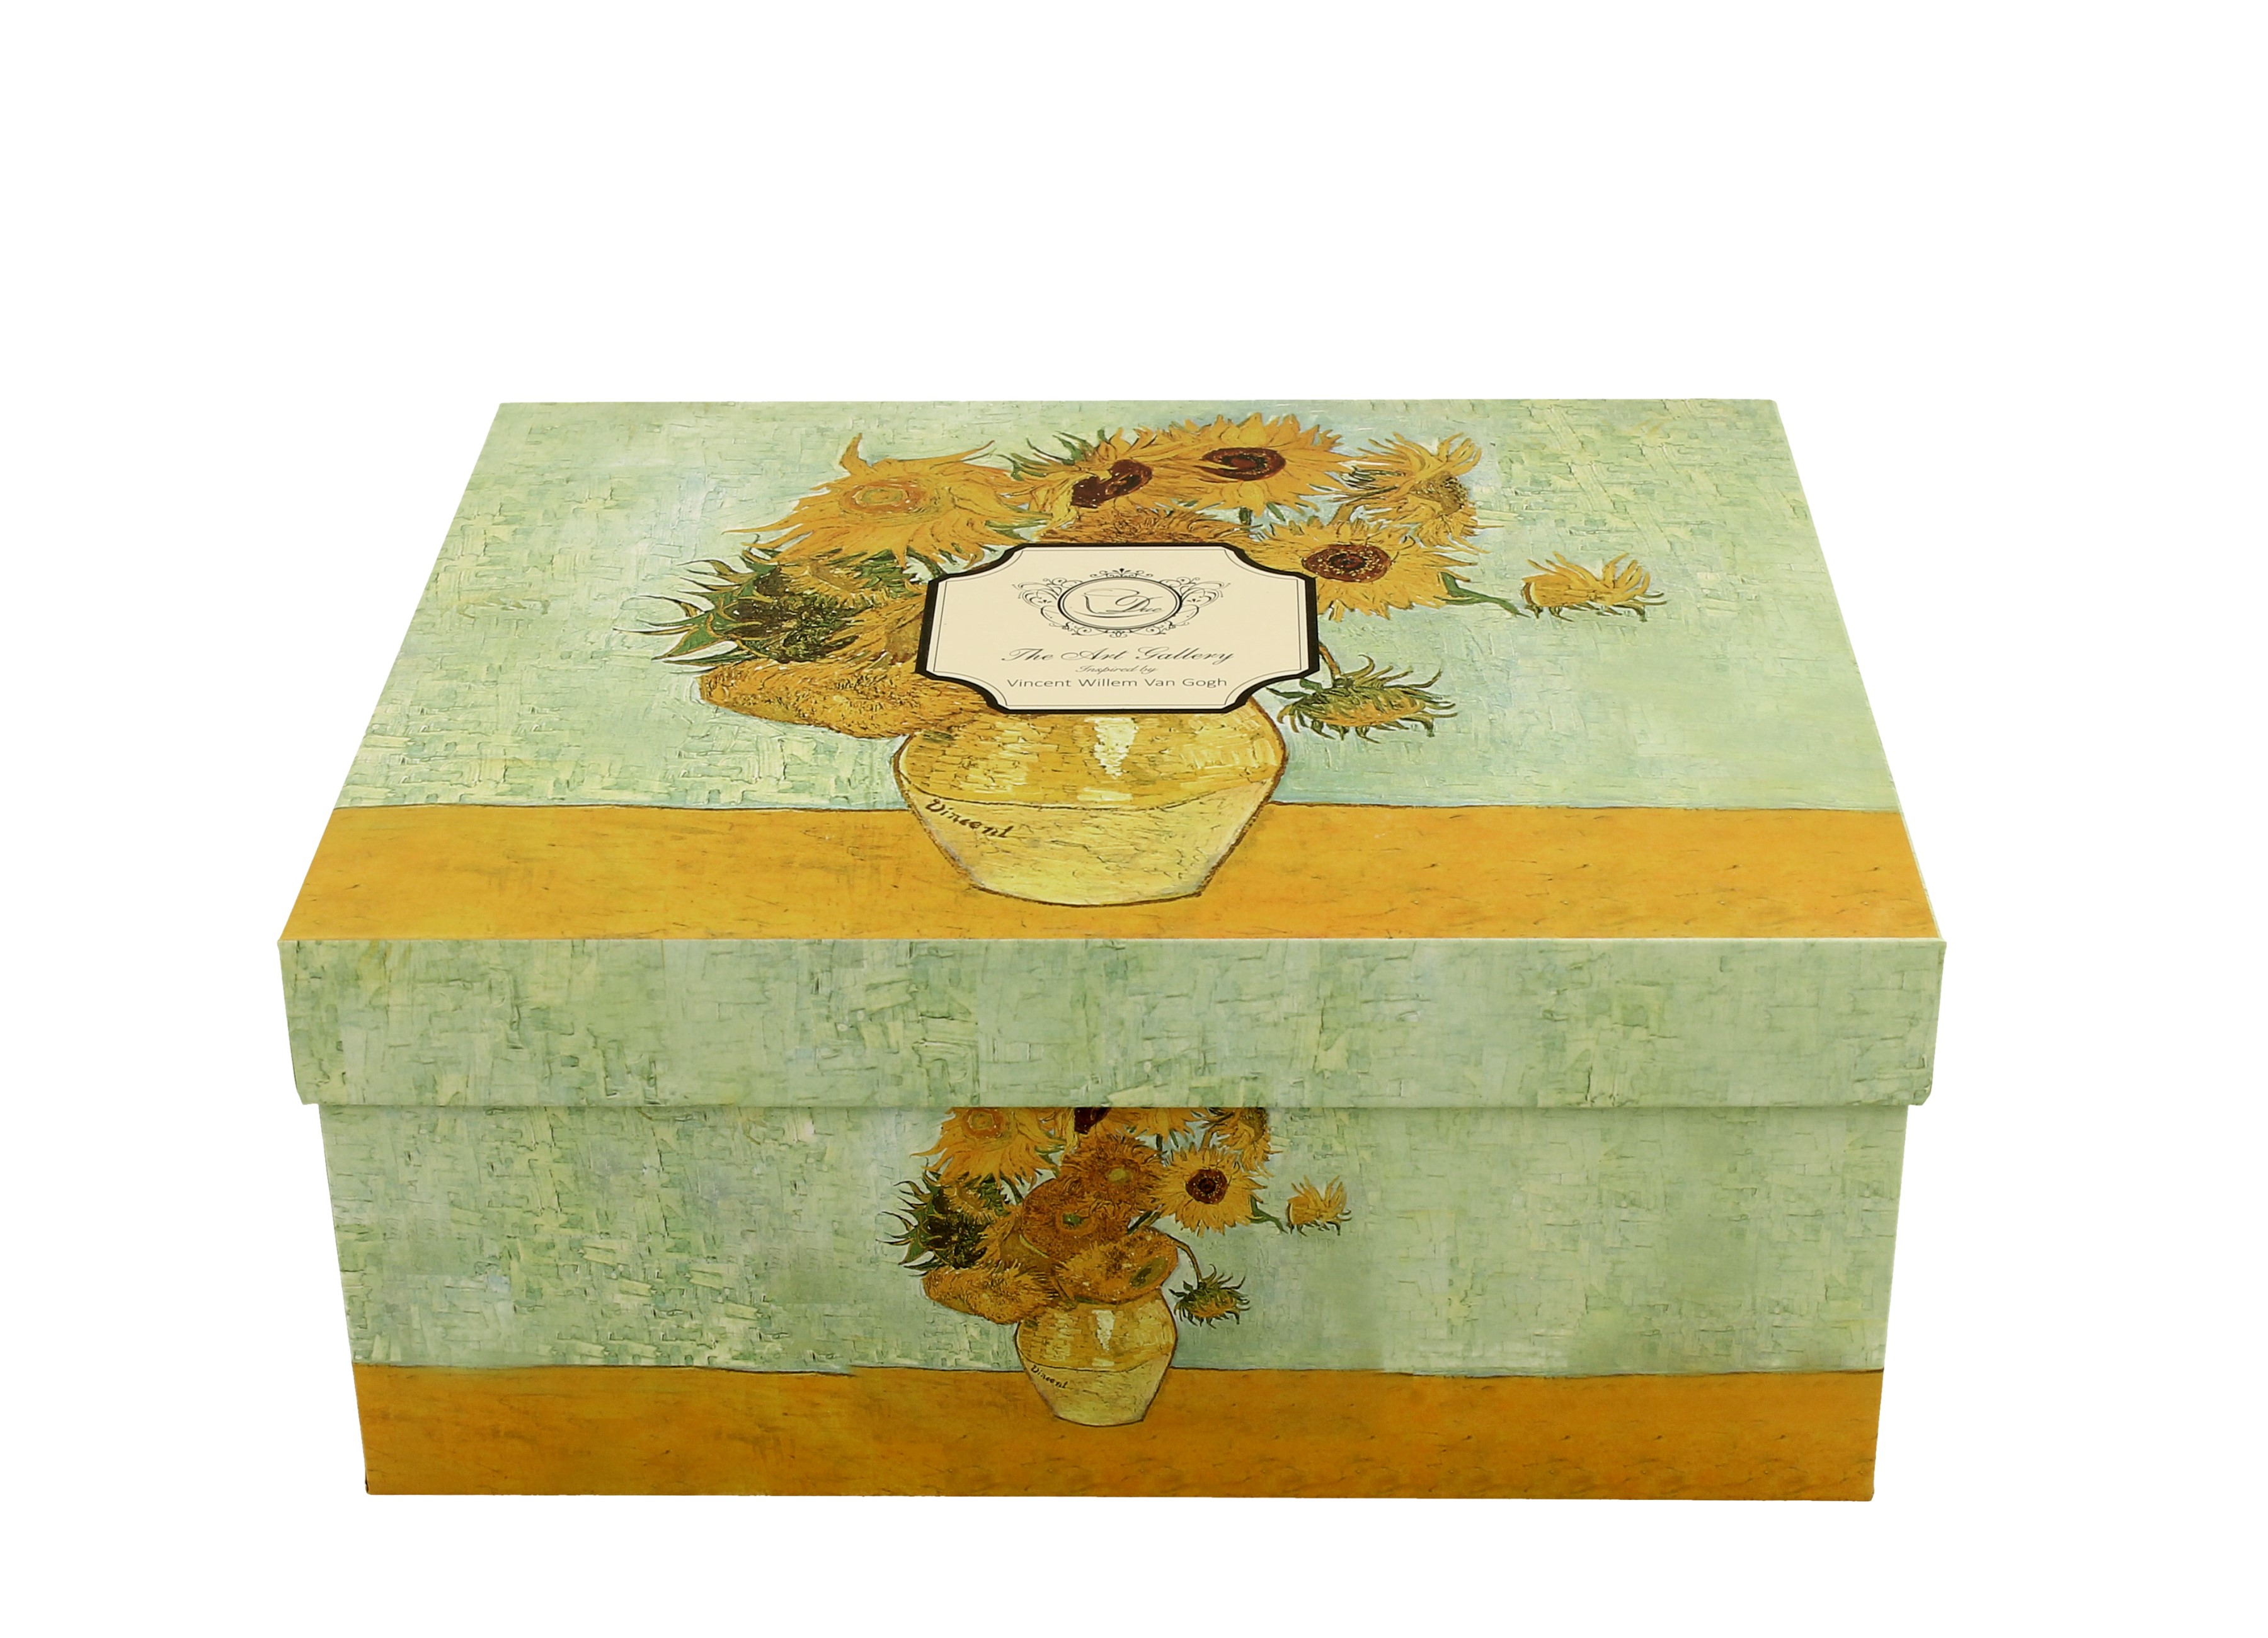 Sada dvoch luxusných šálok s podšálkou V. van Gogh - Sunflowers 270 ml